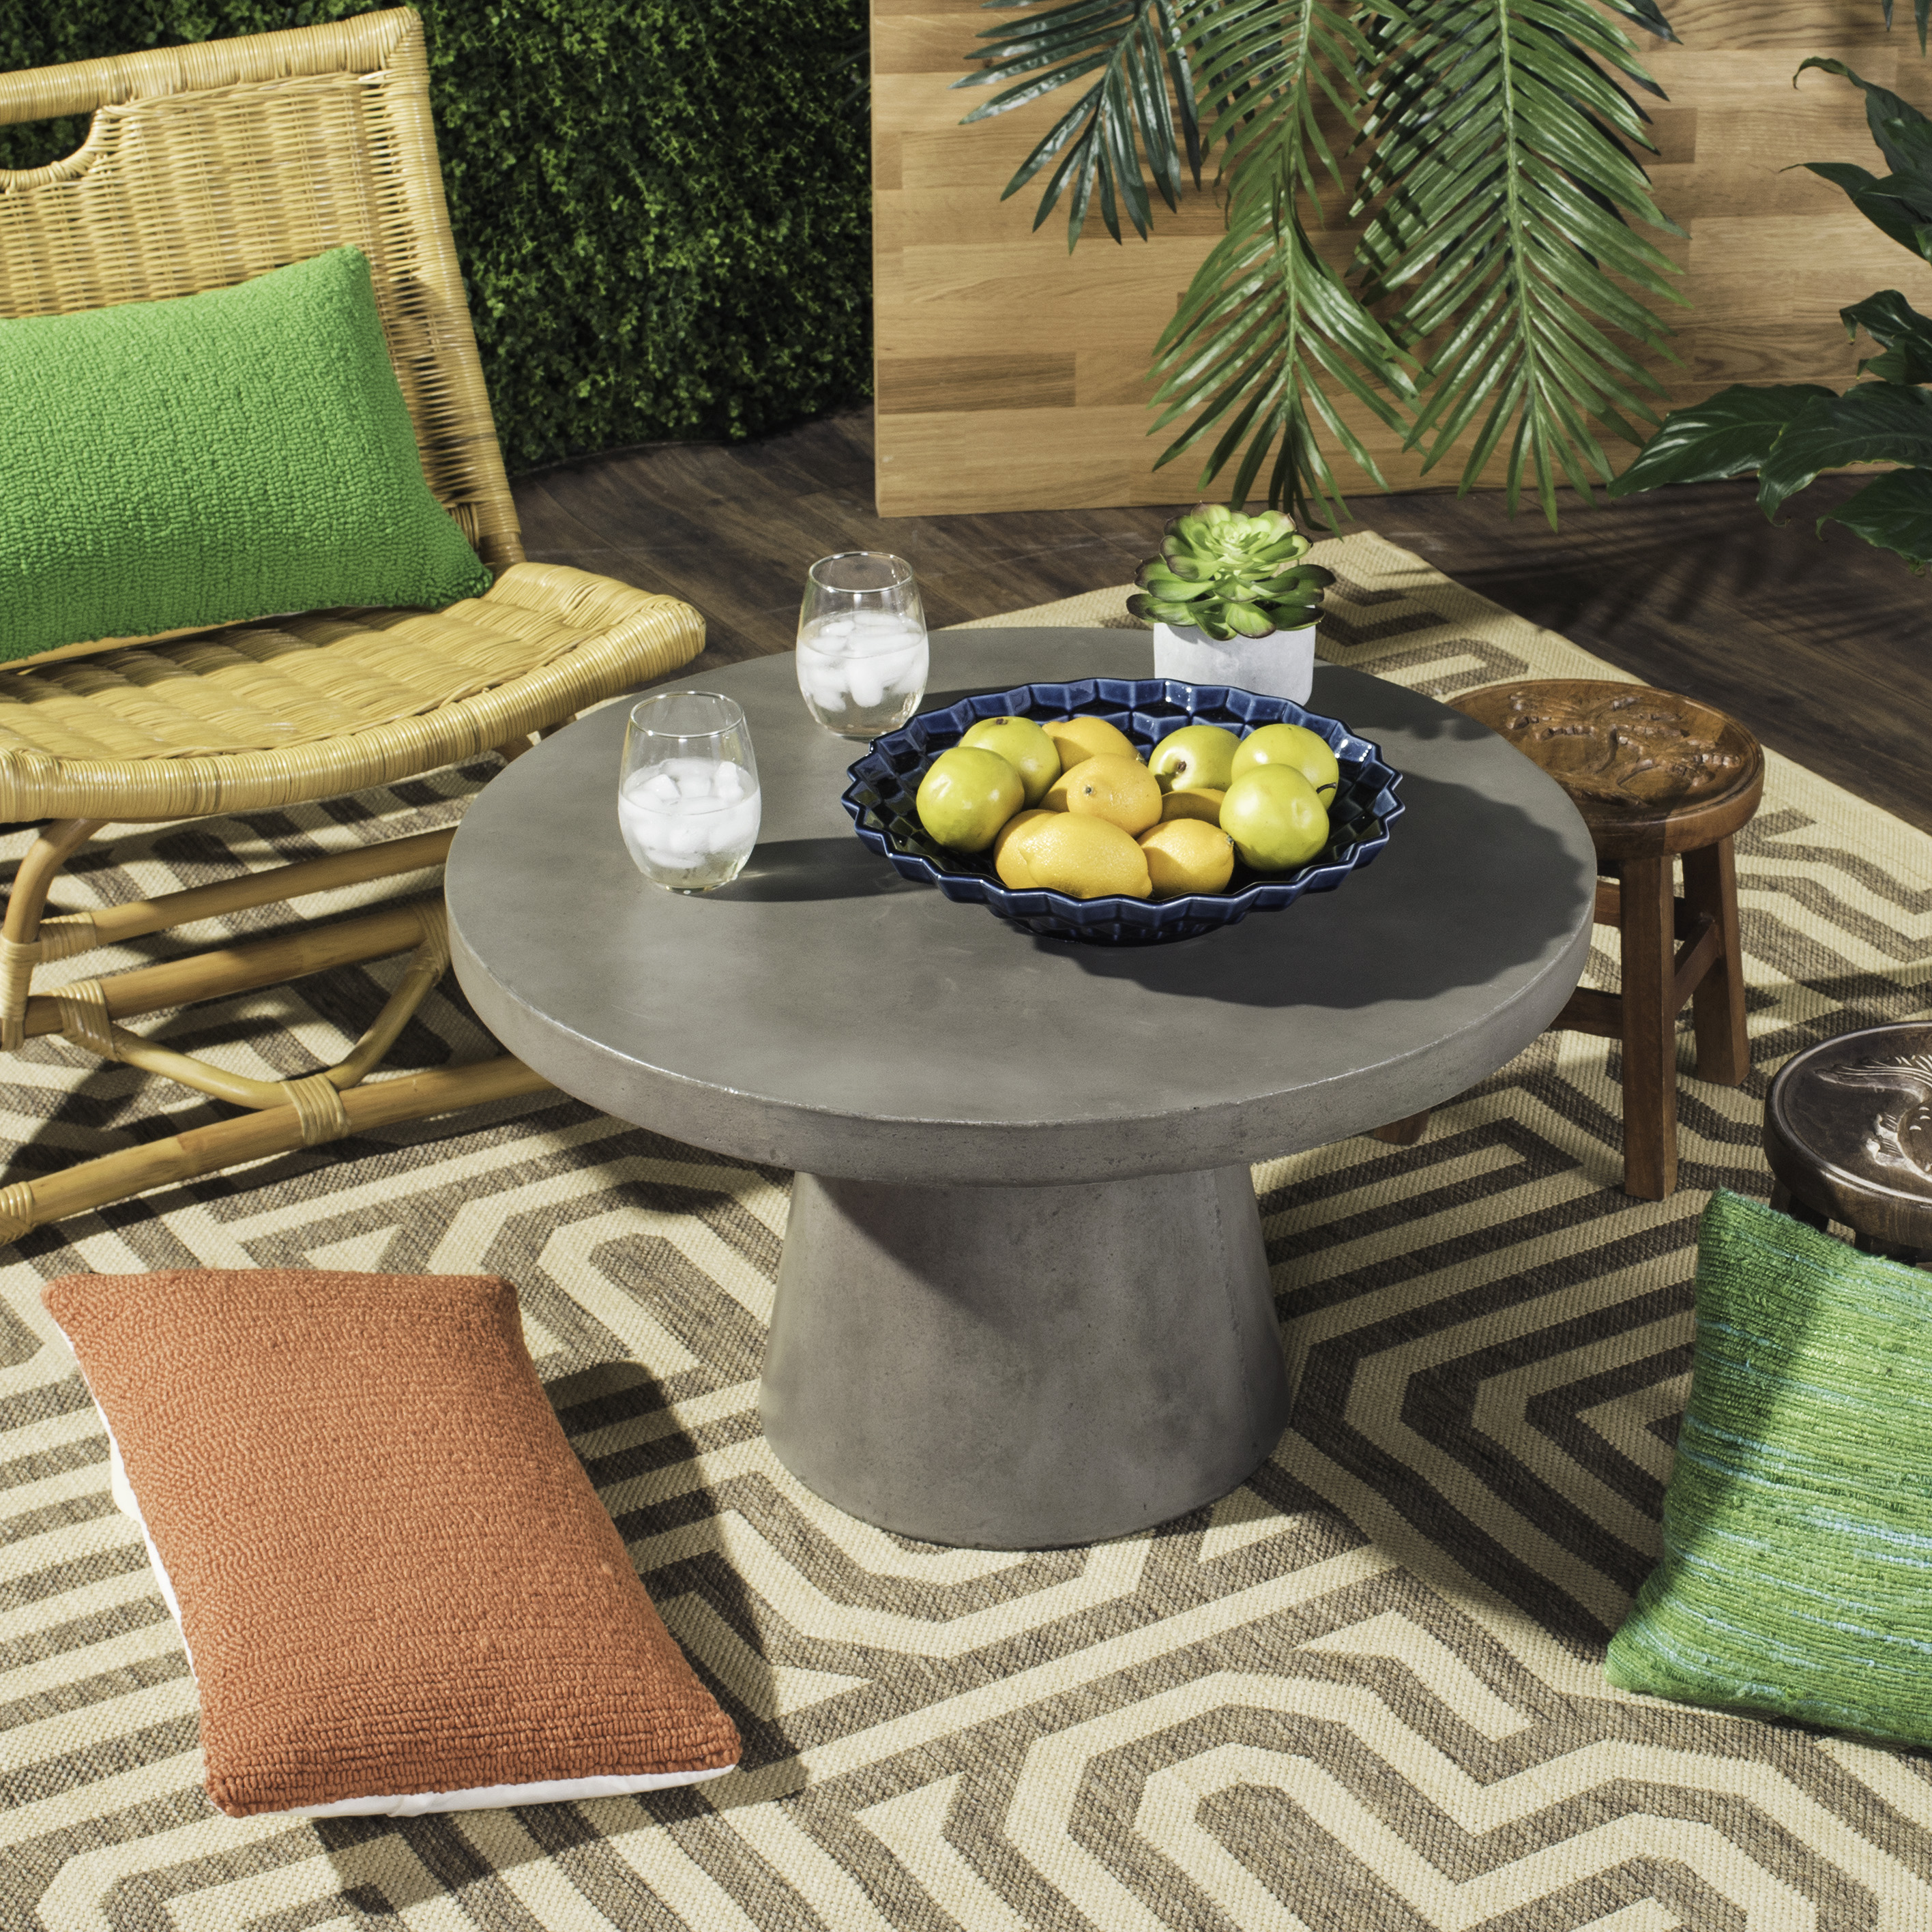 SAFAVIEH Outdoor Collection Delfia Concrete Round Coffee Table Dark Grey - image 1 of 8